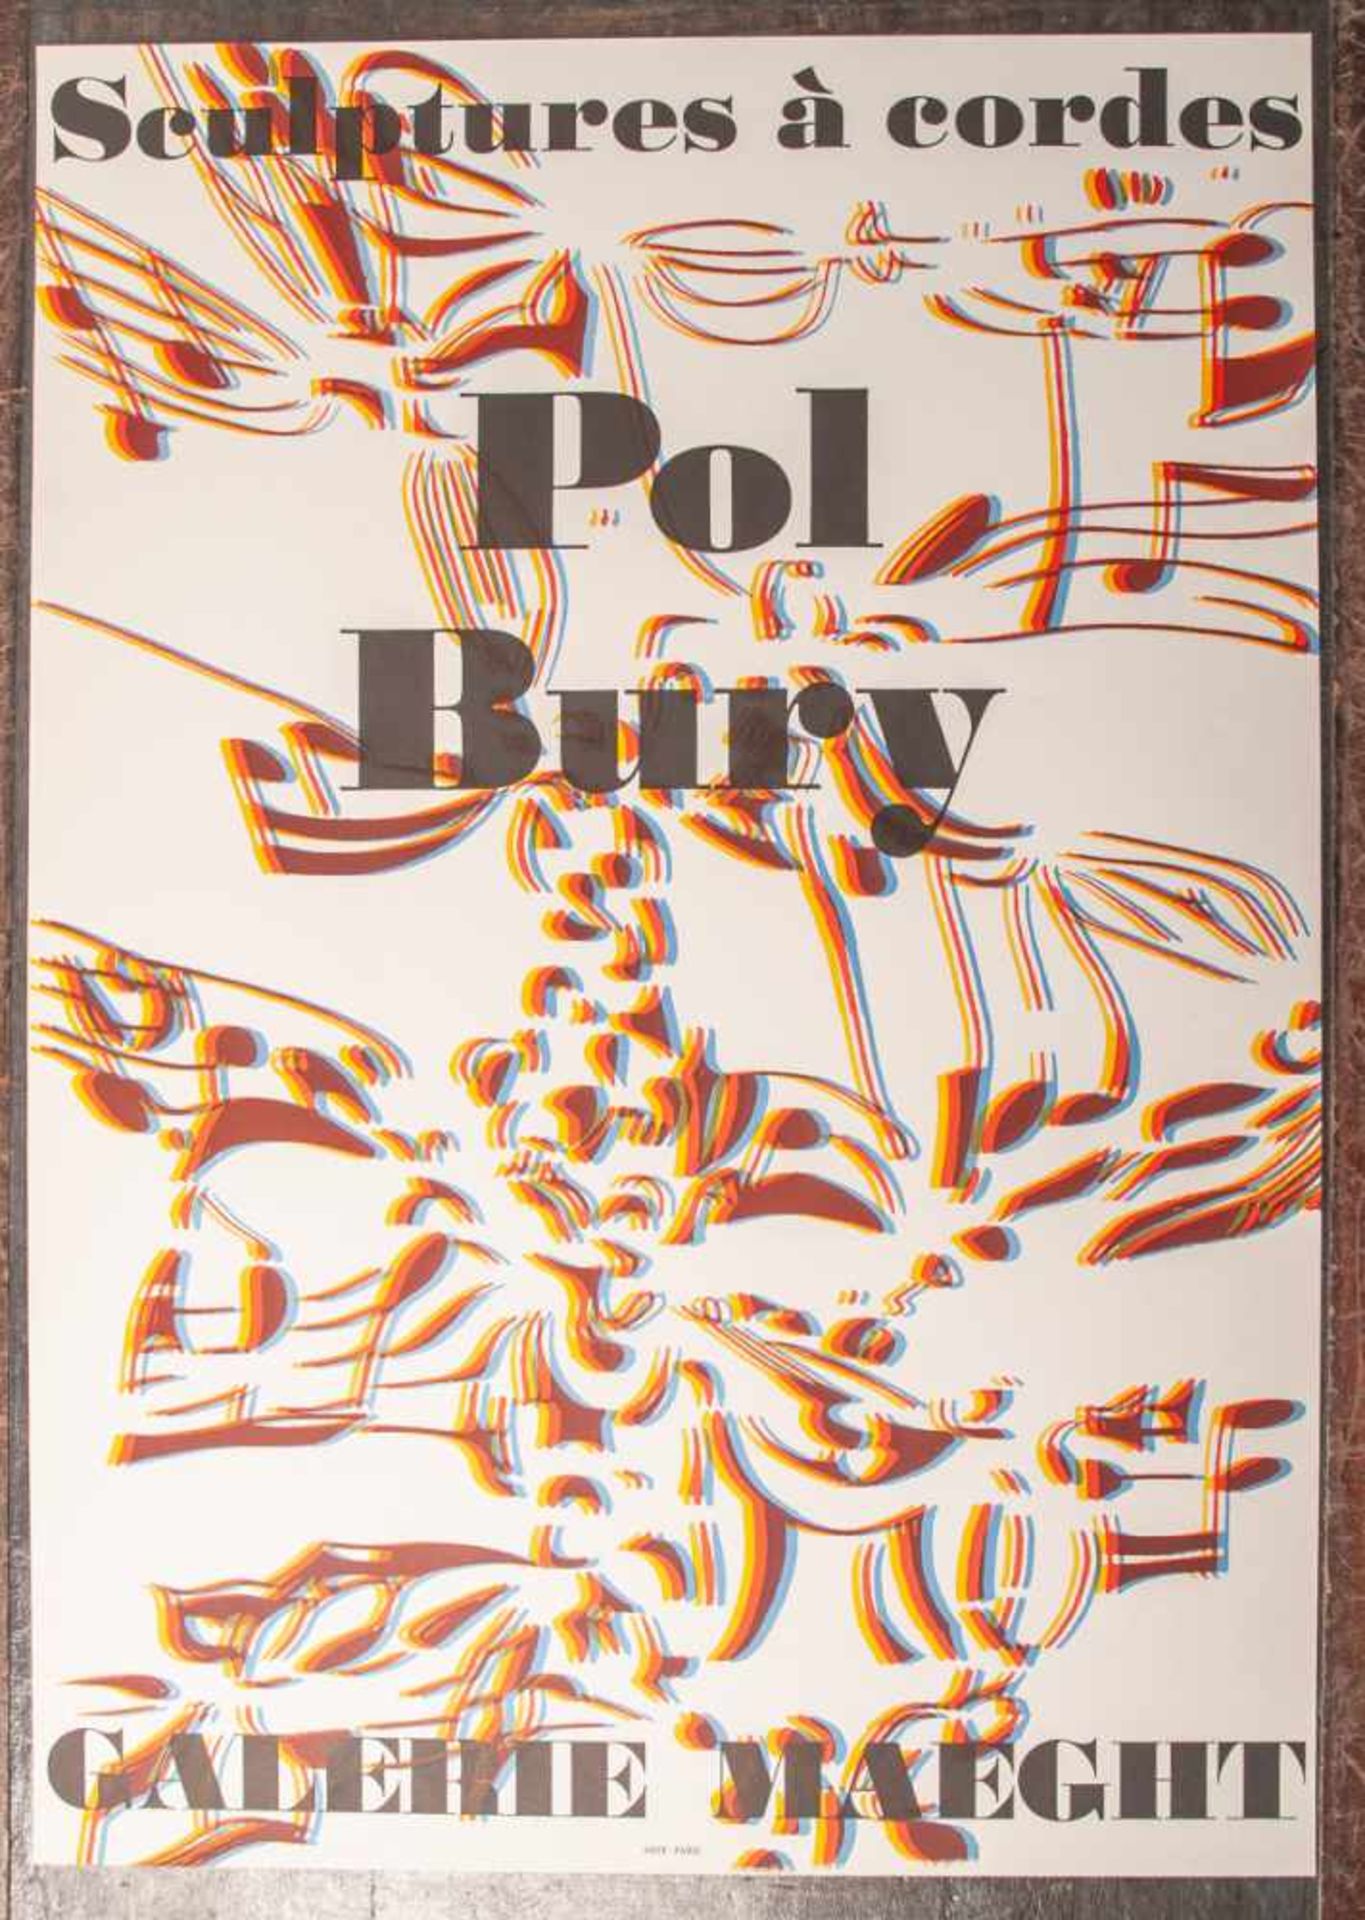 Bury, Pol (1922 - 2005), Ausstellungsplakat "Sculptures á cordes" für Bury-Ausstellung inder Galerie